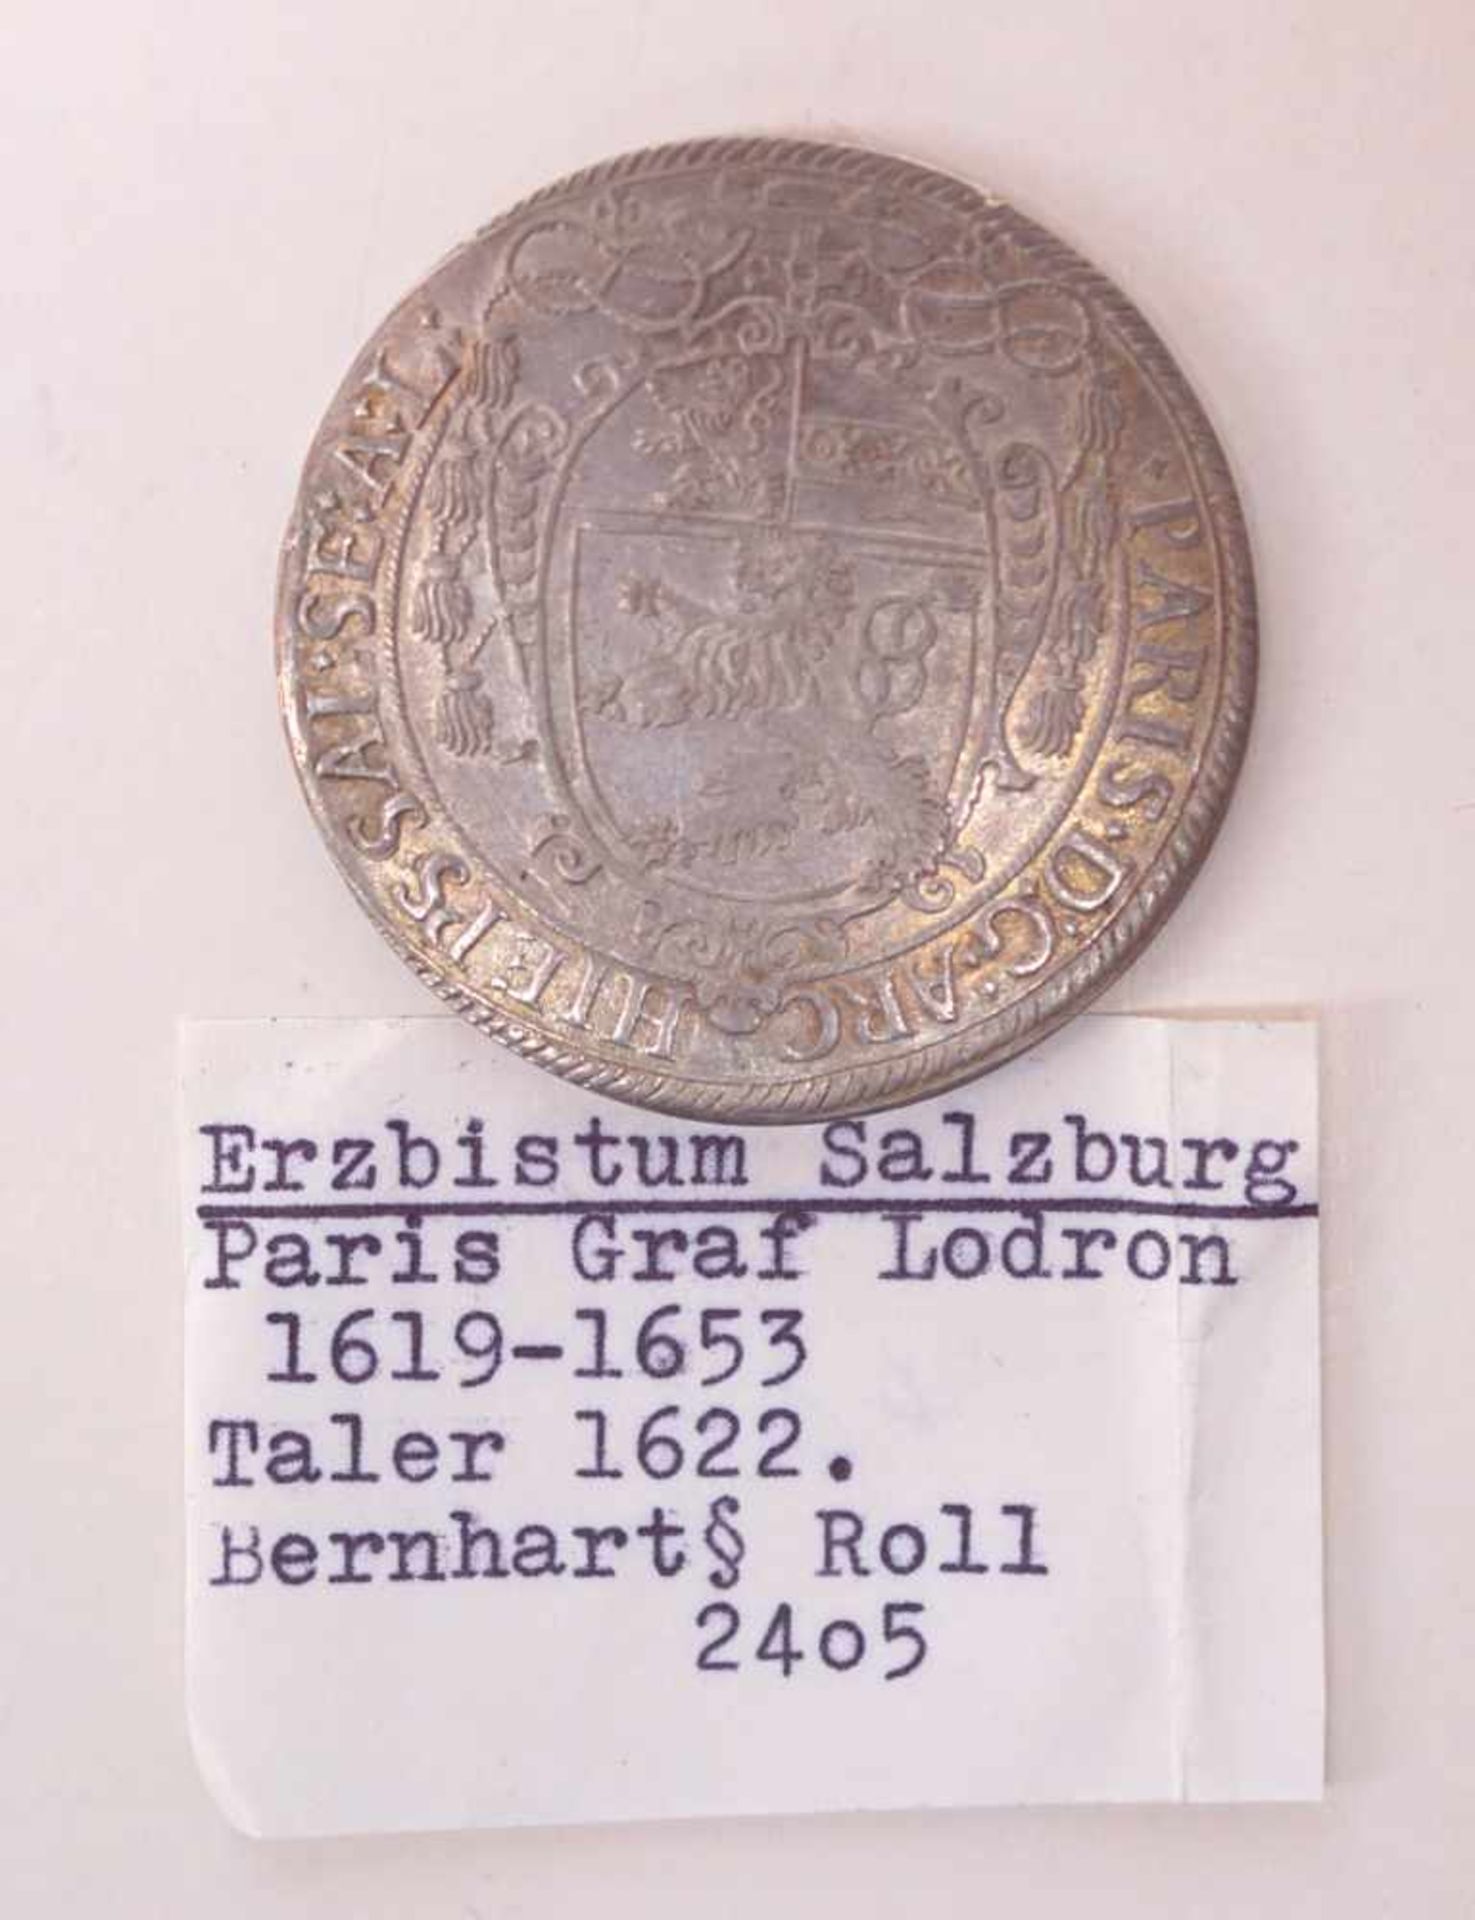 Erzbistum Salzburg, Paris Graf von Lodron 1619-1653, Taler von 1622VS: Wappenschild der Grafen von - Bild 2 aus 2